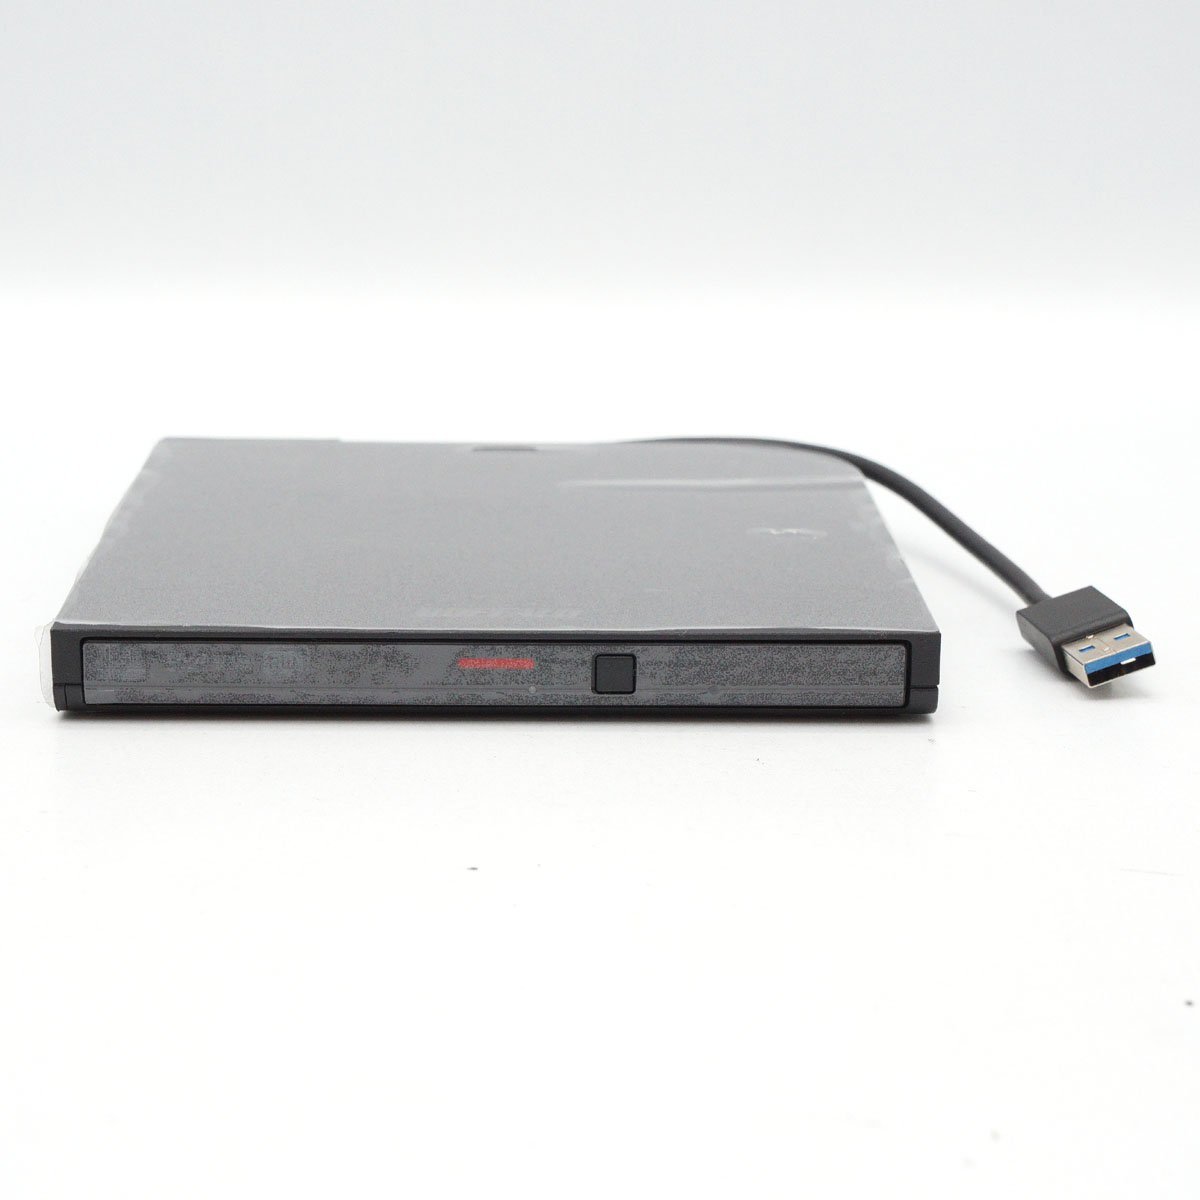 【美品】BUFFALO ポータブルDVDドライブ DVSM-PTV8U3 ブラック USB3.2(Gen1)/USB2.0 CD/DVD 12cm/8cmメディア対応 本体のみ [H800283]_画像3